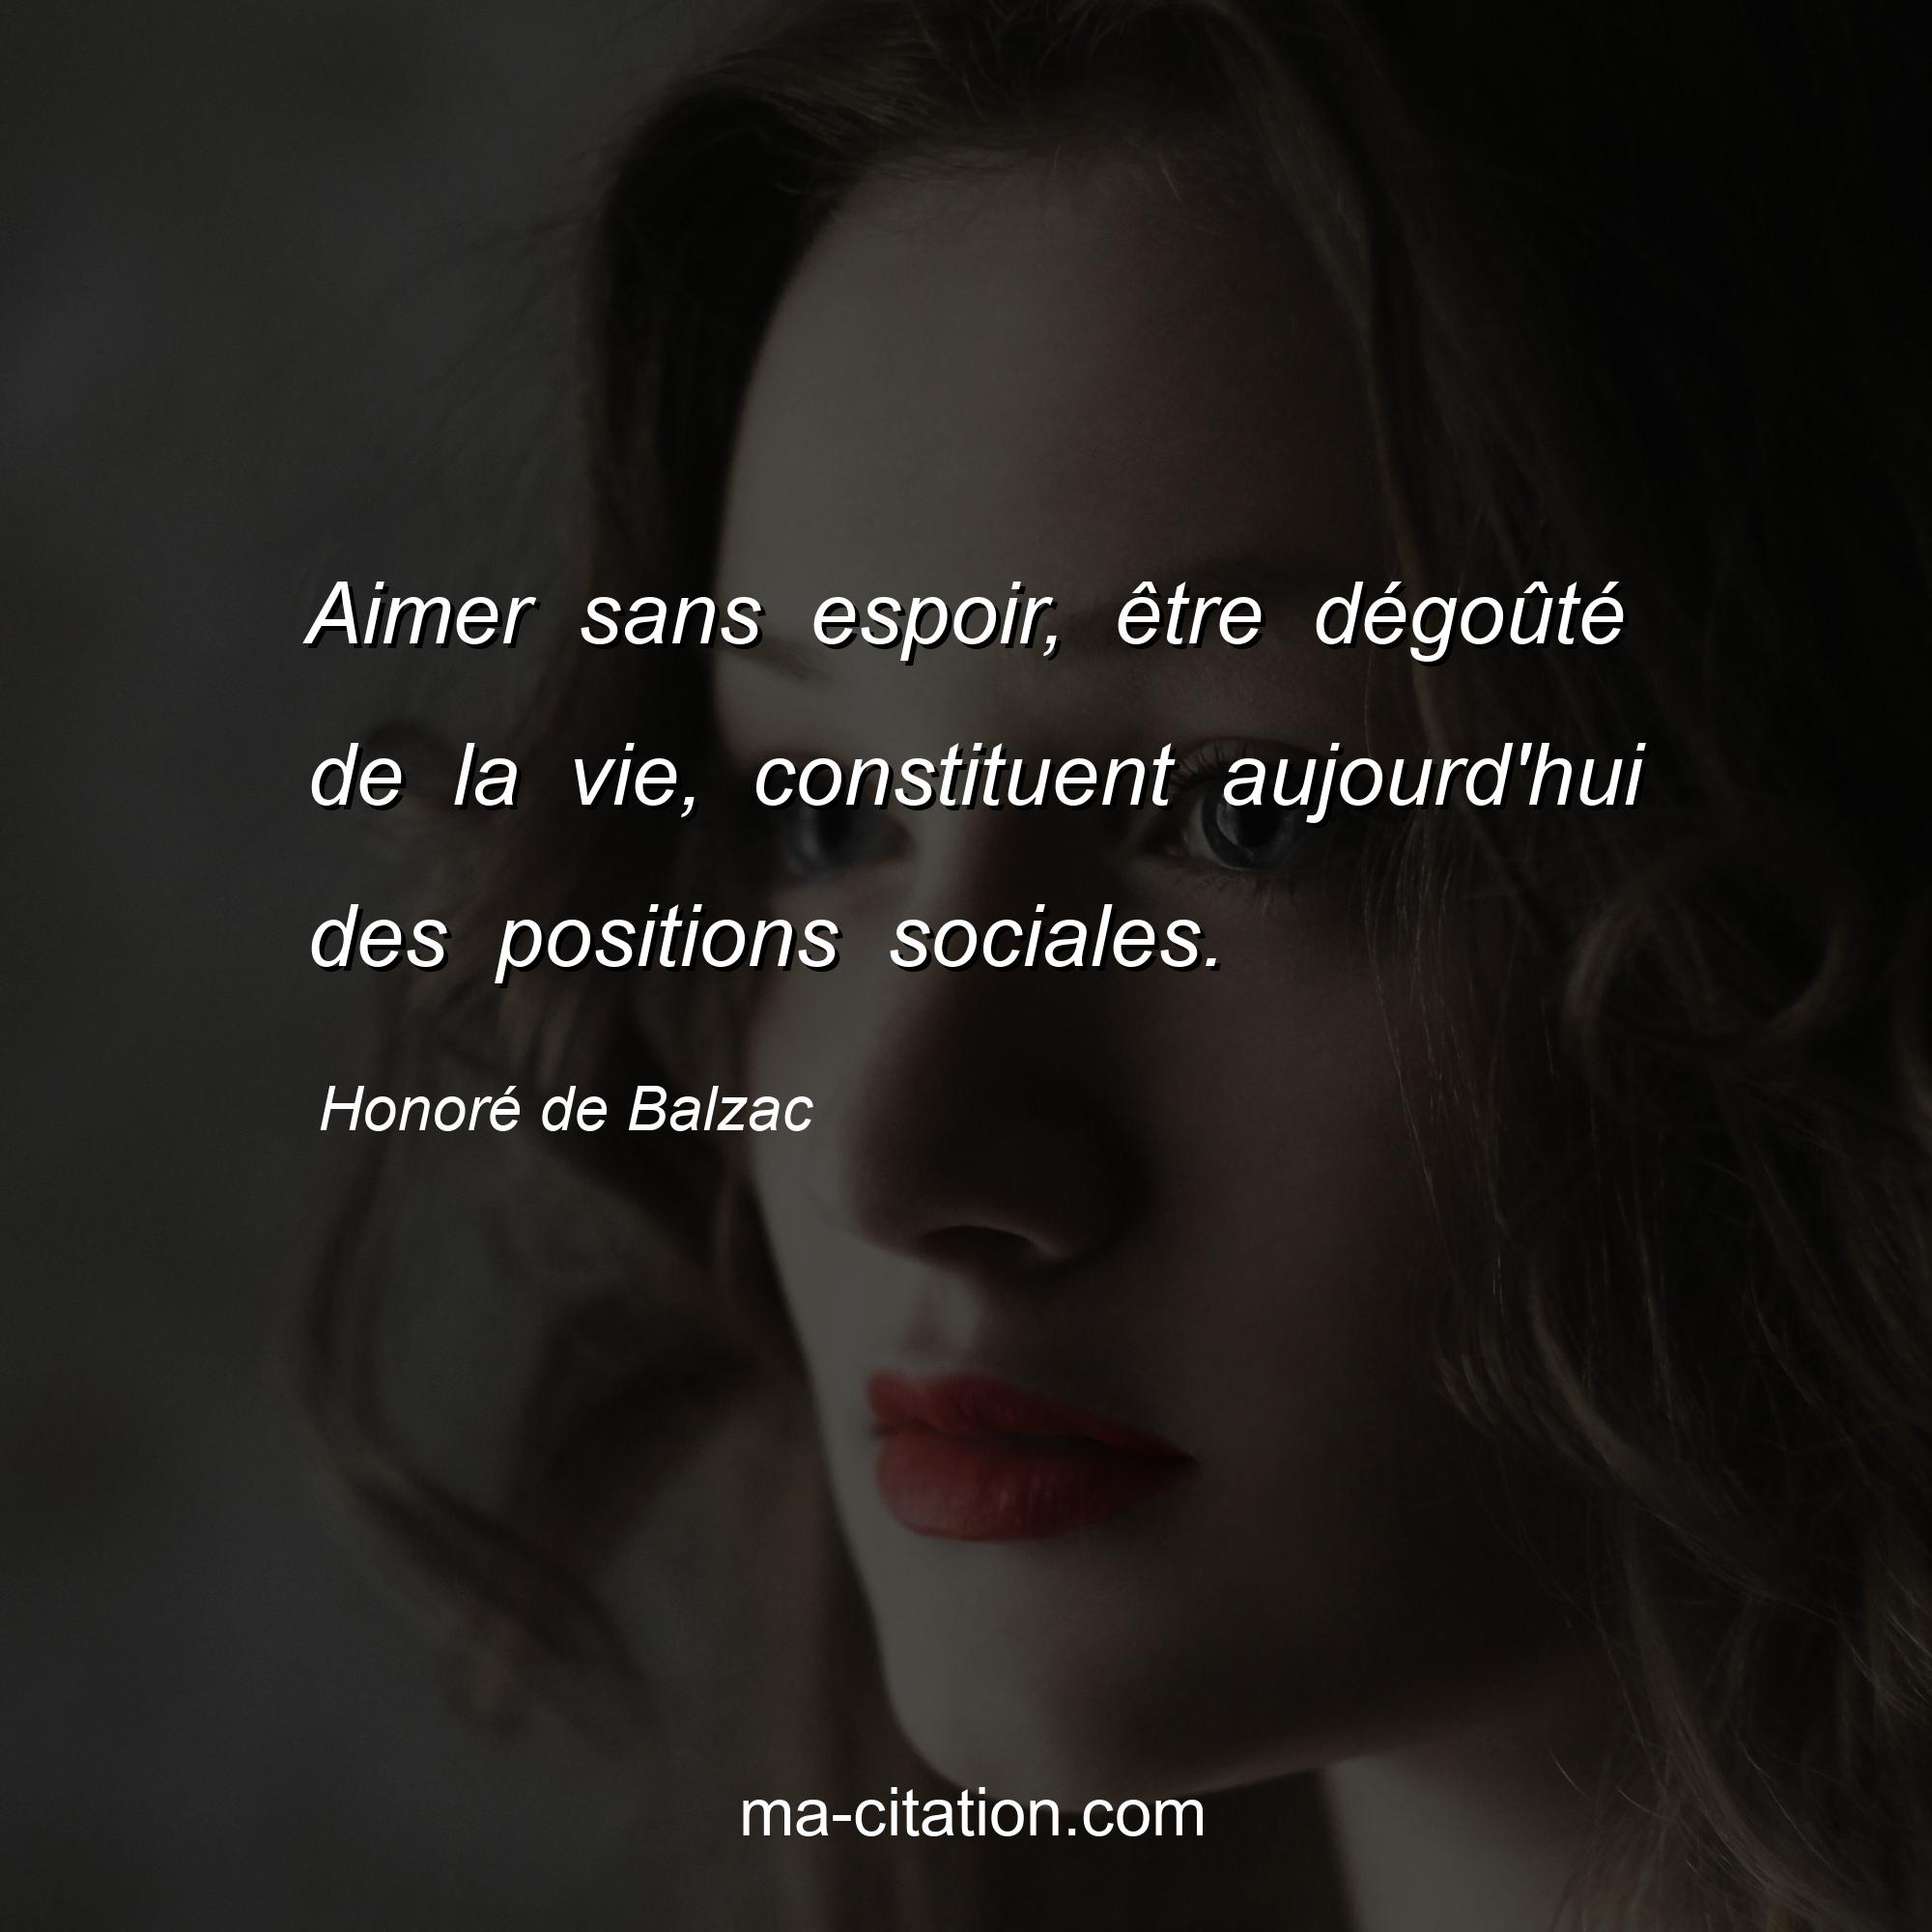 Honoré de Balzac : Aimer sans espoir, être dégoûté de la vie, constituent aujourd'hui des positions sociales.